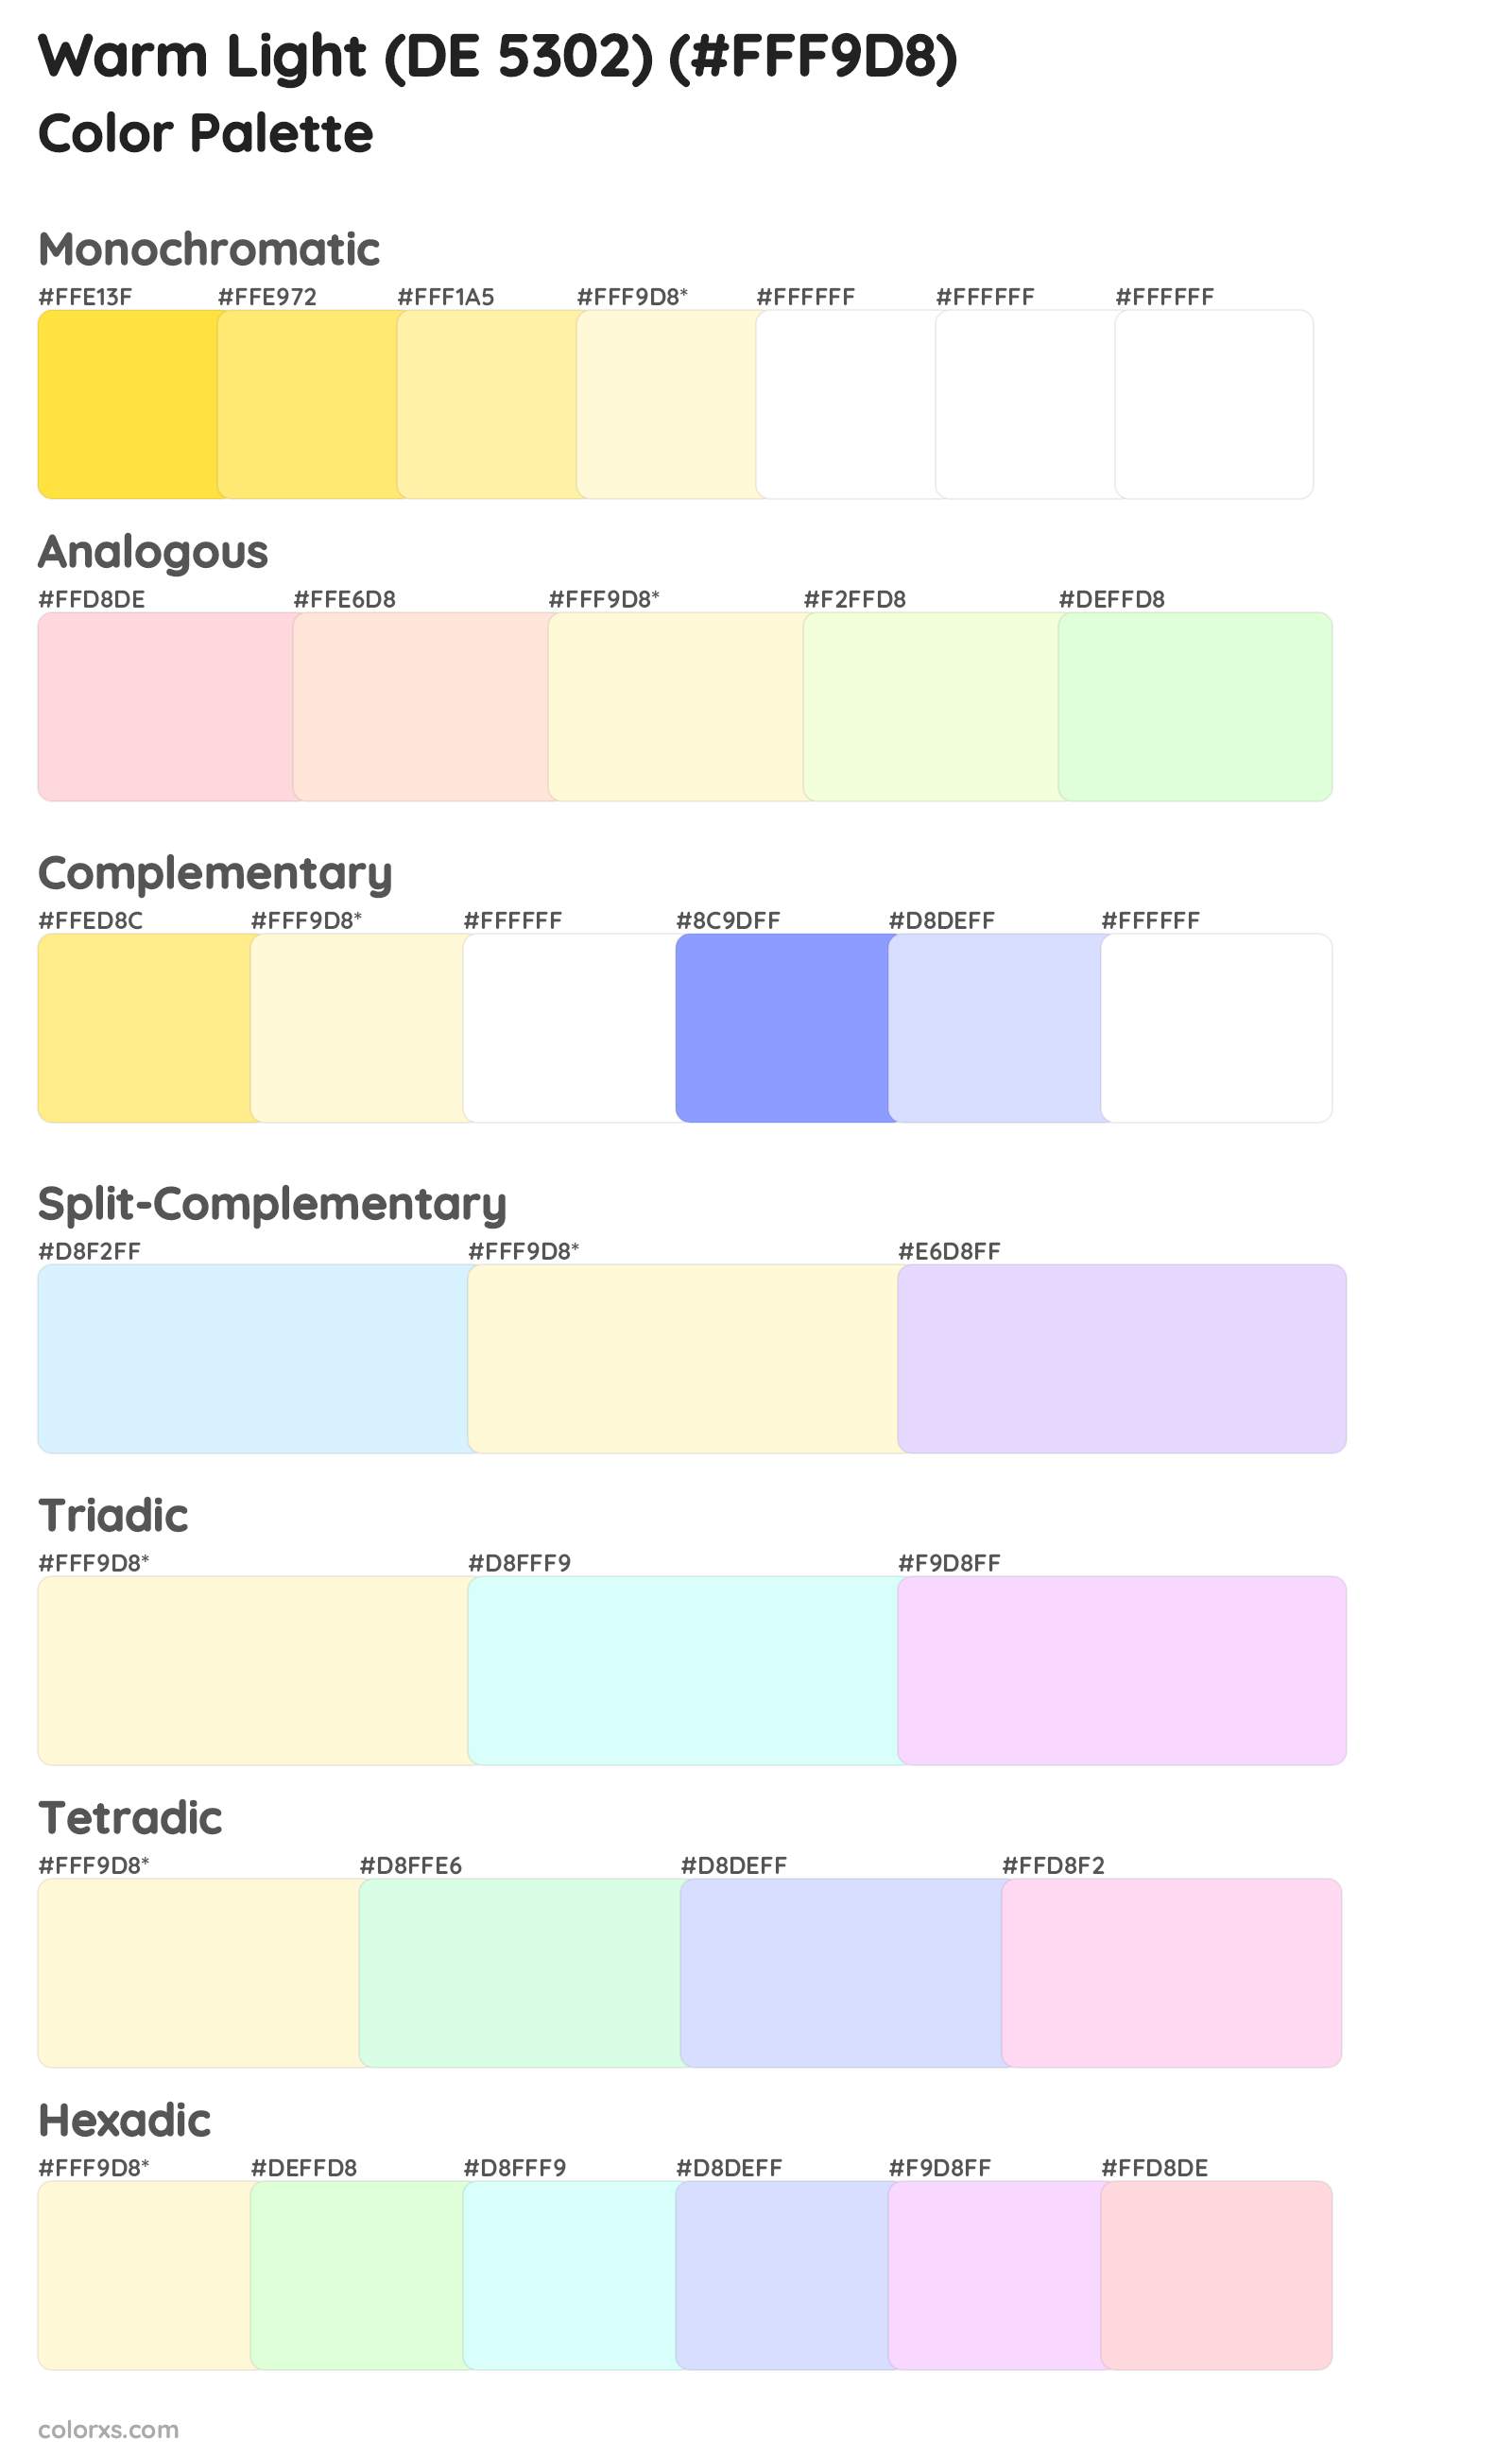 Warm Light (DE 5302) Color Scheme Palettes